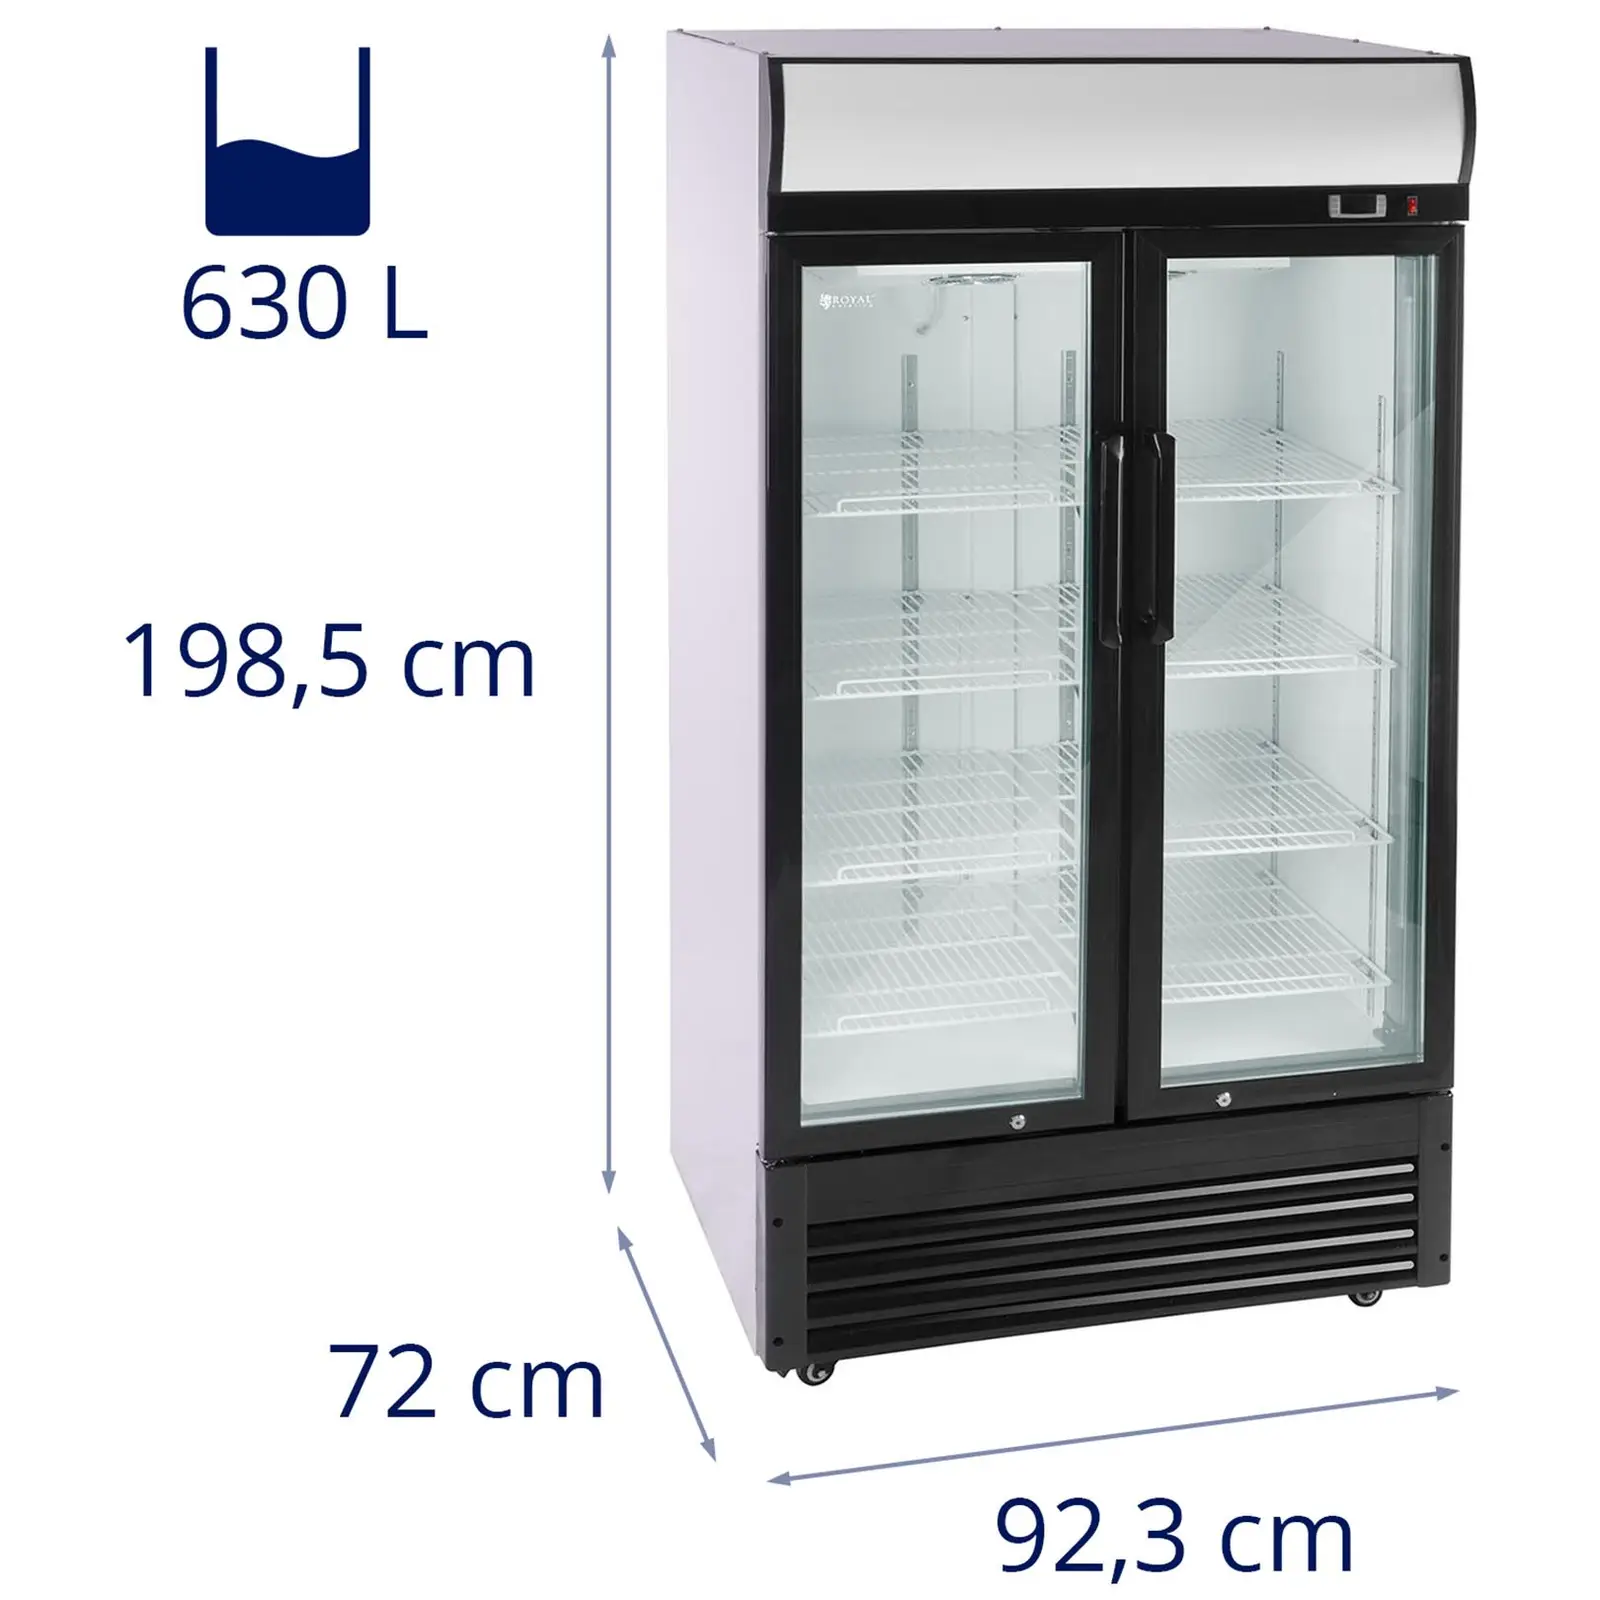 Flaschenkühlschrank - 630 L - 5